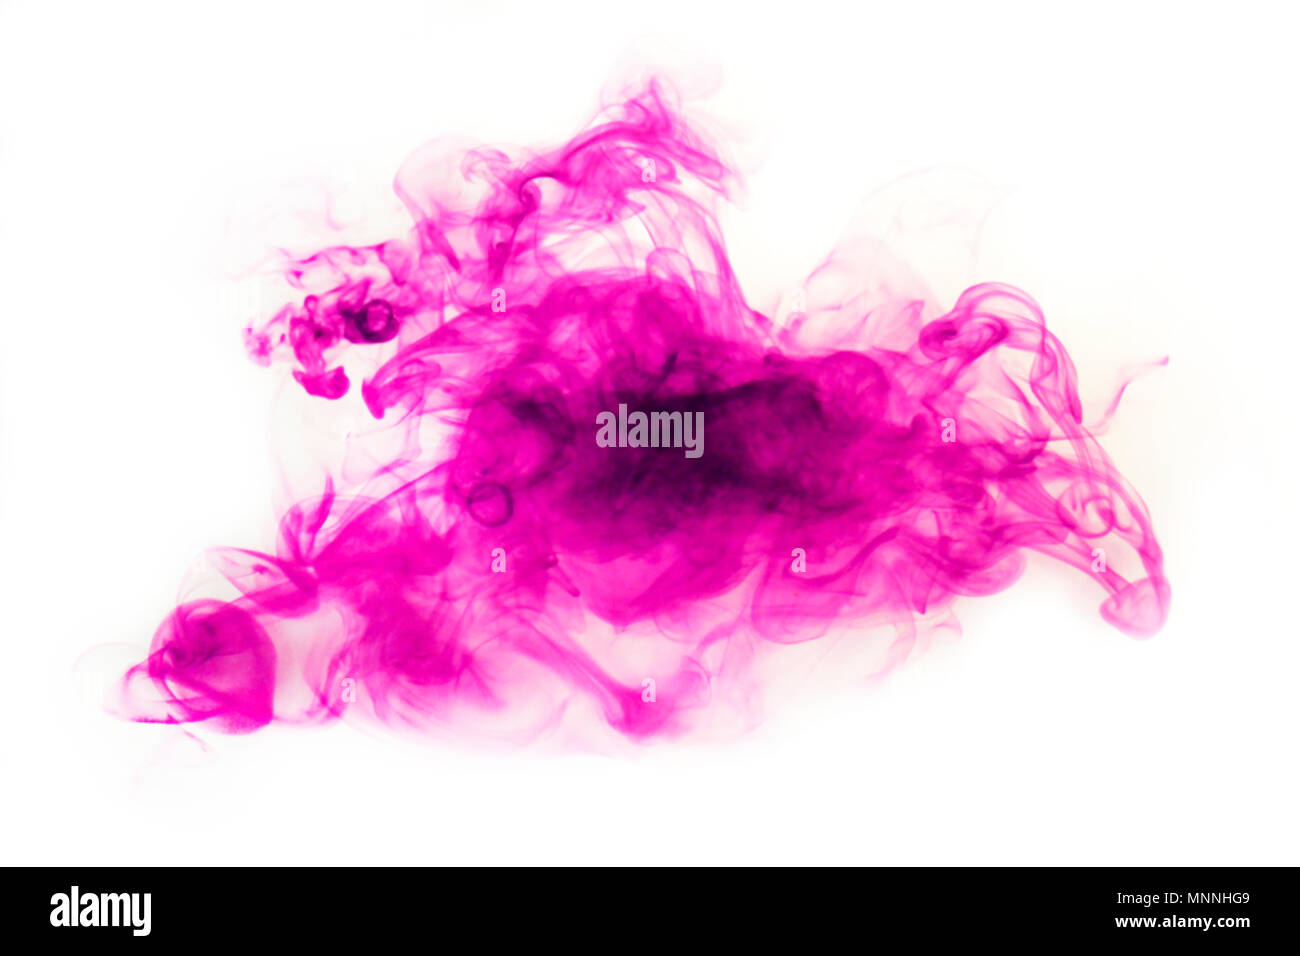 Purple ink Blot breitet sich in Wasser. Abstraktes Bild. Stockfoto